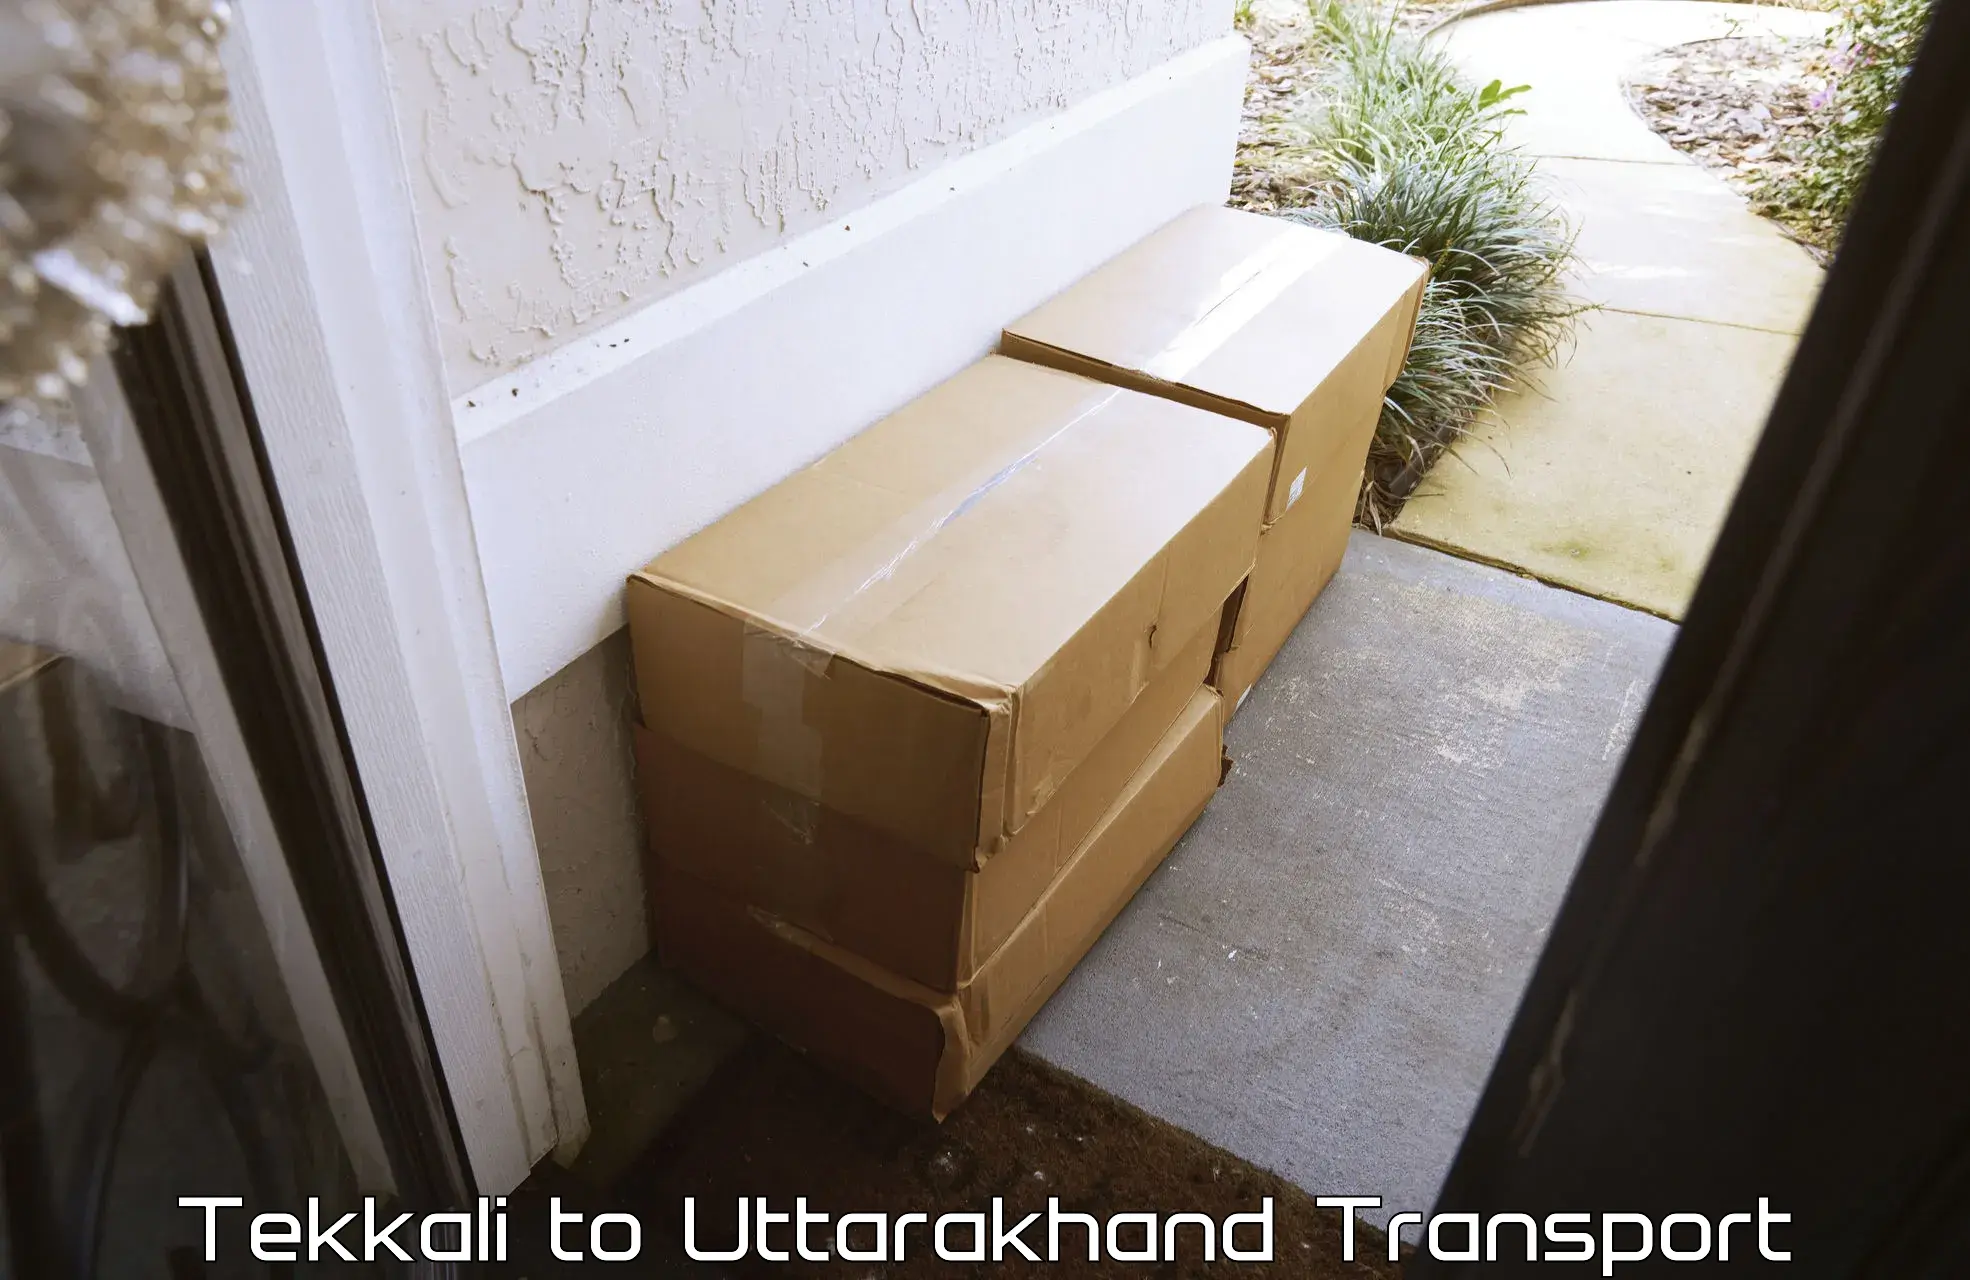 Online transport Tekkali to Uttarakhand